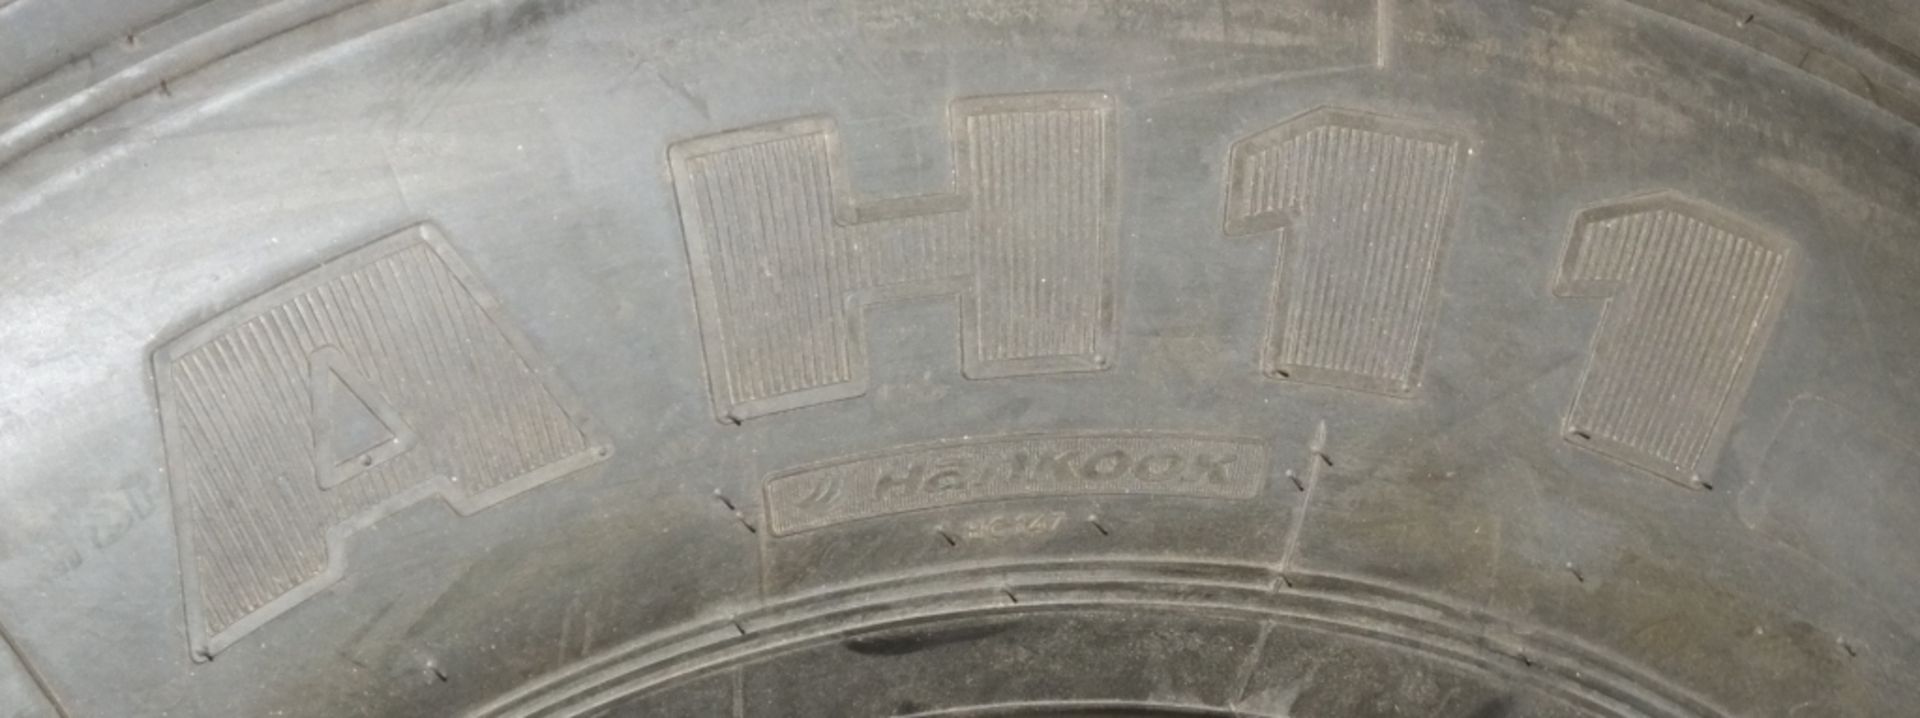 Hankook AH11 305/70R19.5 tyre (new & unused) - Image 4 of 5